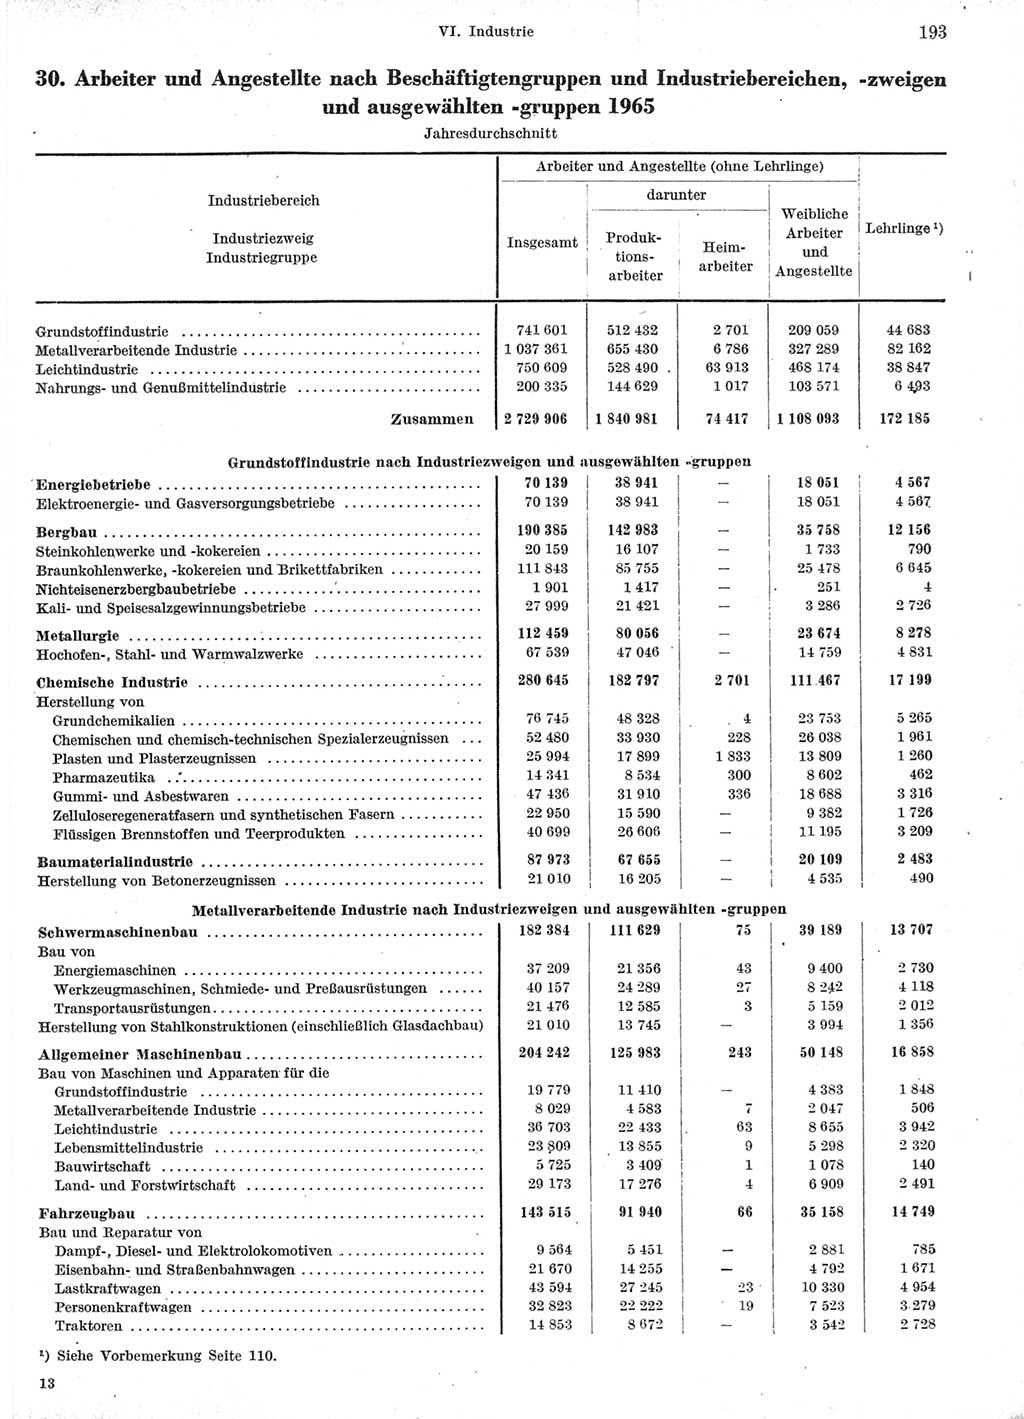 Statistisches Jahrbuch der Deutschen Demokratischen Republik (DDR) 1966, Seite 193 (Stat. Jb. DDR 1966, S. 193)